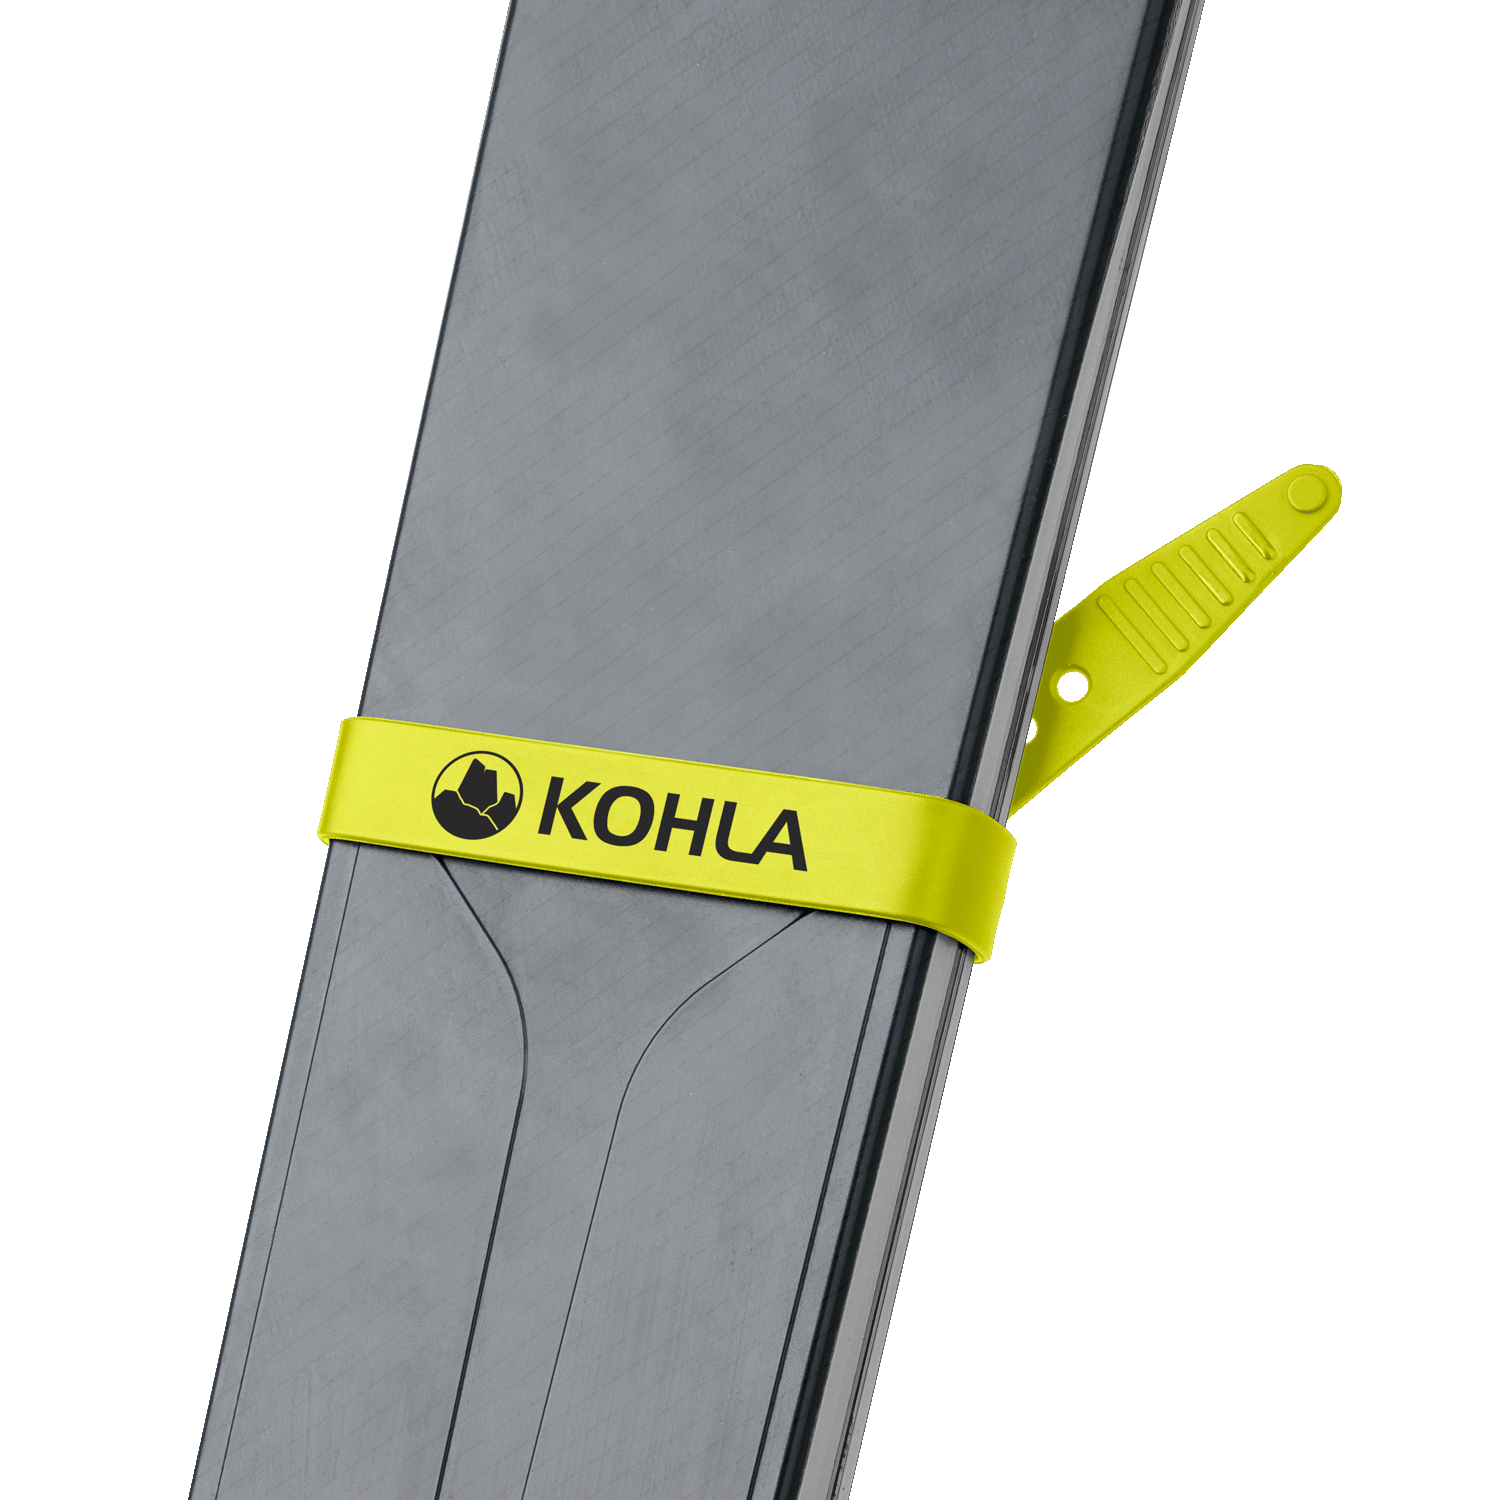 Kohla Ski Strap Set sulphur